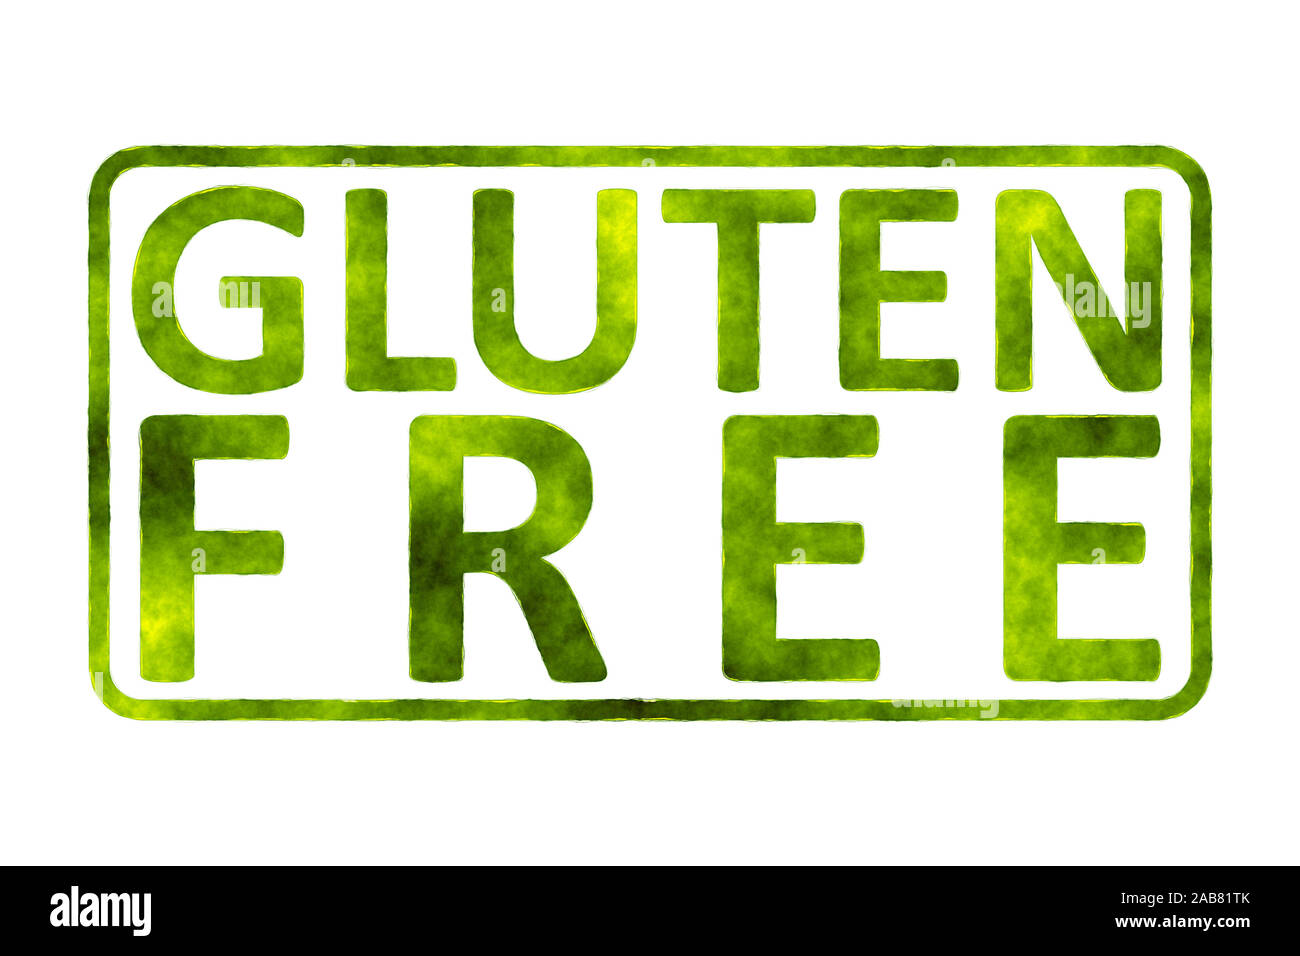 Ein Symbol mit der Aufschrift: 'Gluten Free' Stock Photo